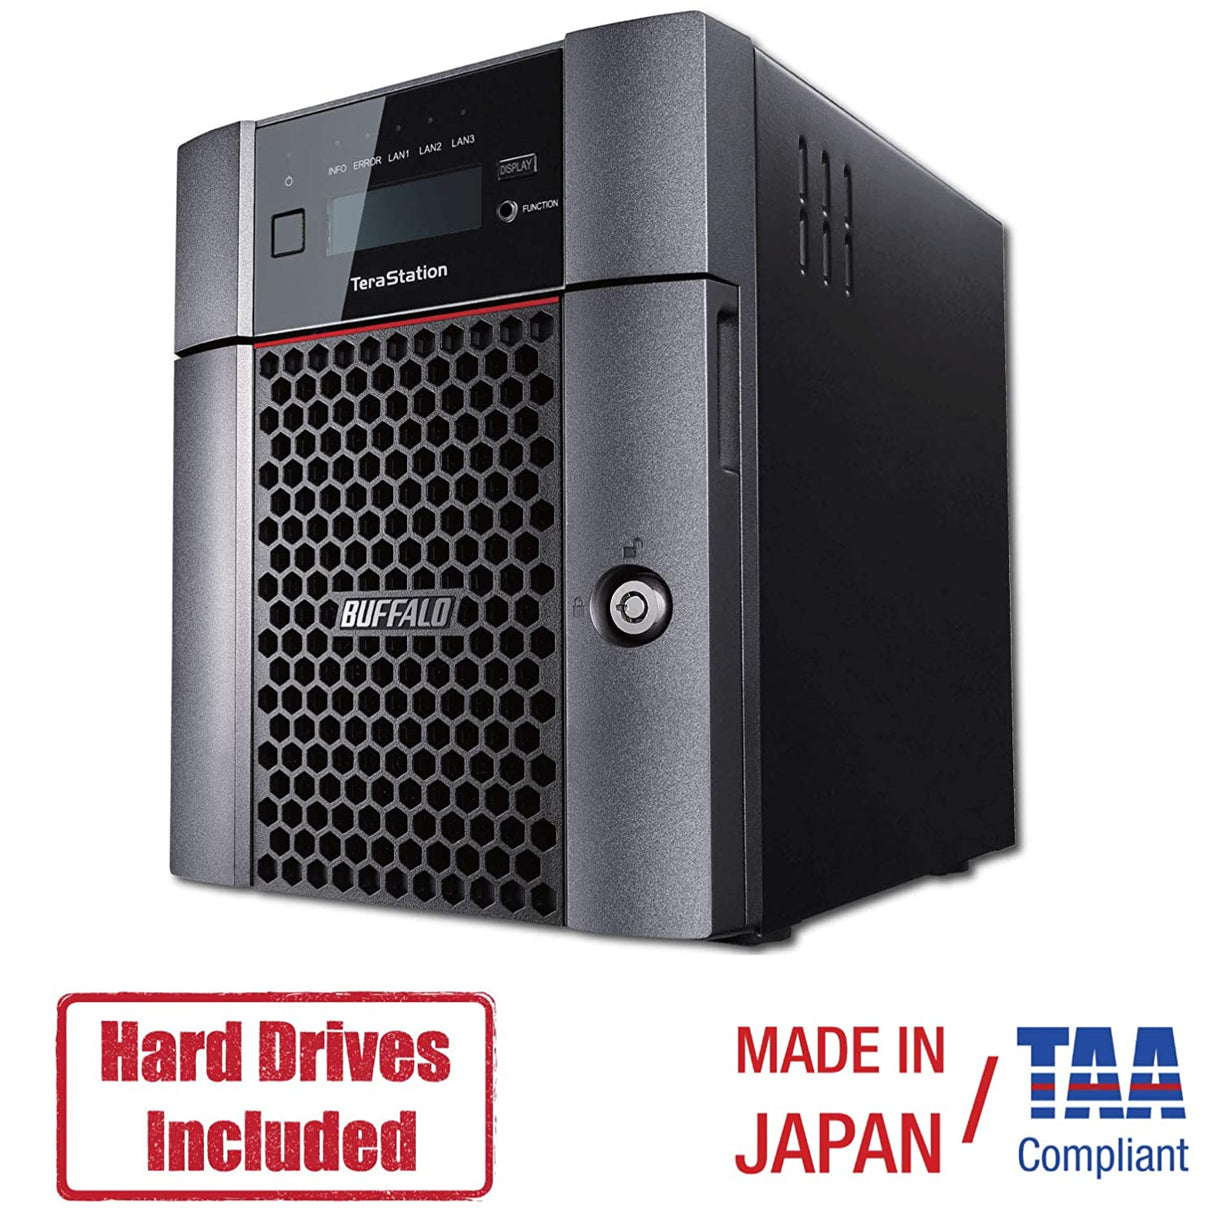 BUFFALO TeraStation 5410DN Desktop NAS 16TB (2x8TB) with HDD NAS Hard Drives Included 10GbE / 4 Bay/RAID/iSCSI/NAS/Storage Server/NAS Server/NAS Storage/Network Storage/File Server TeraStation 5410 Desktop 4 Drive Bays 16 TB (2x8 TB)